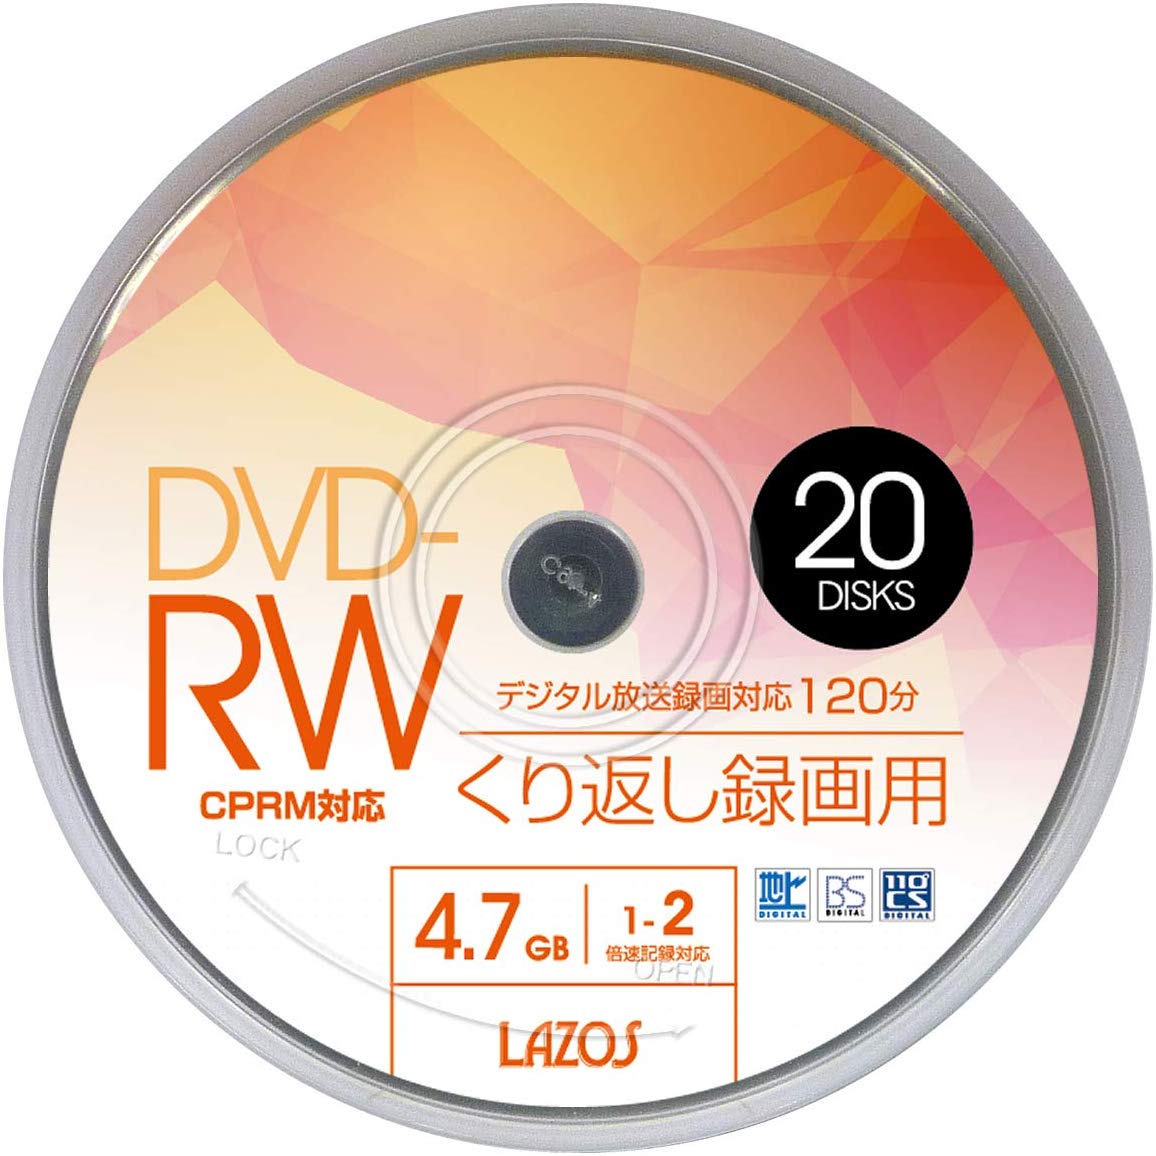 lazos 　DVD-RWメディア 1～2倍速 20枚入 スピンドルケース ホワイトプリンタブル 4.7GB/120min L-DRW20P /スポーツ/記念/撮影/録画/記録